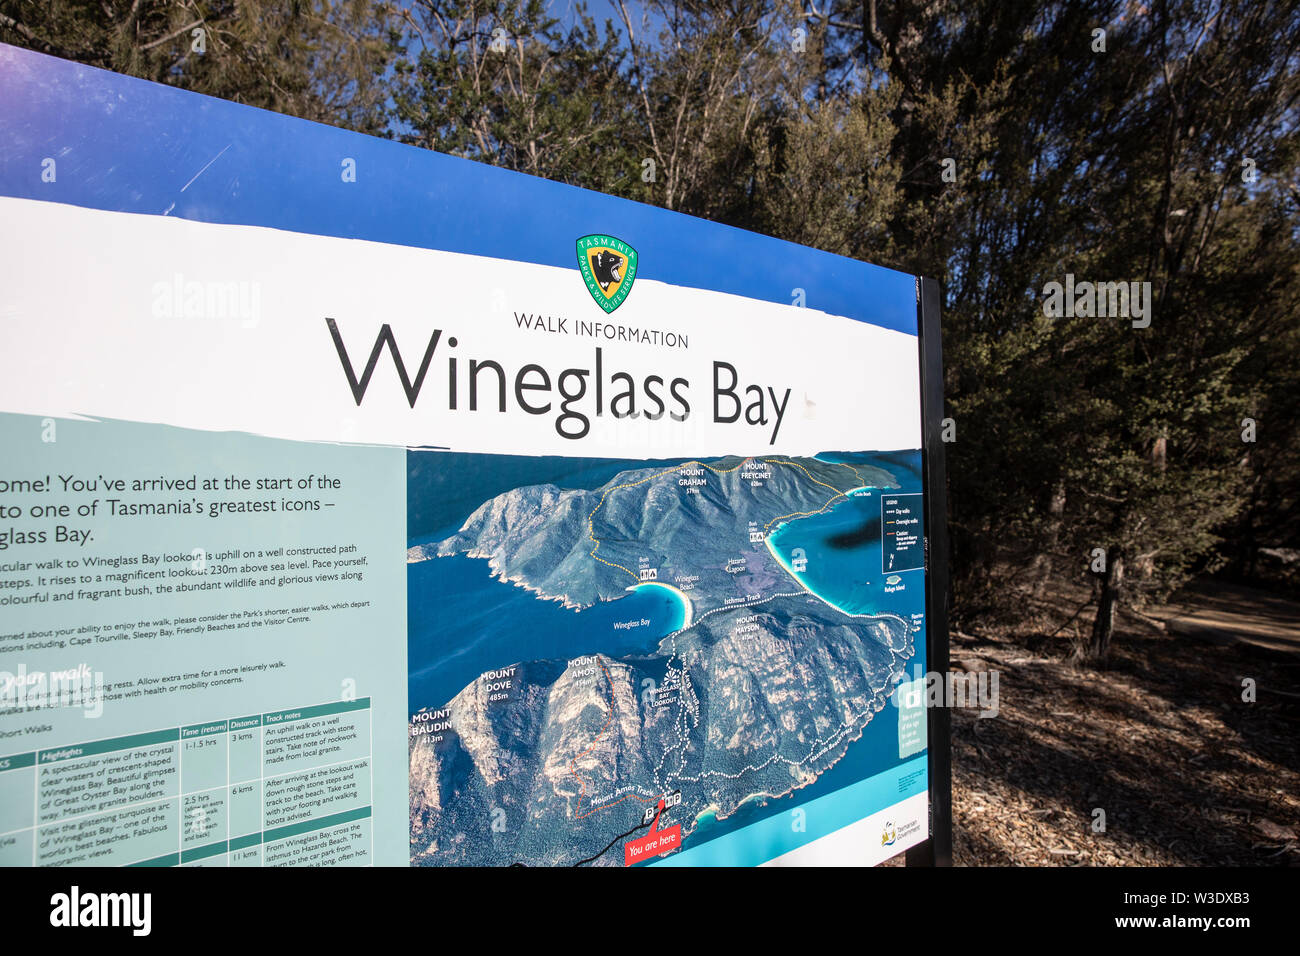 Wineglass Bay Visitor Information, Information Board zu Beginn der Wanderung zum Wineglass Bay Lookout, Freycinet Nationalpark, Tasmanien, Australien Stockfoto